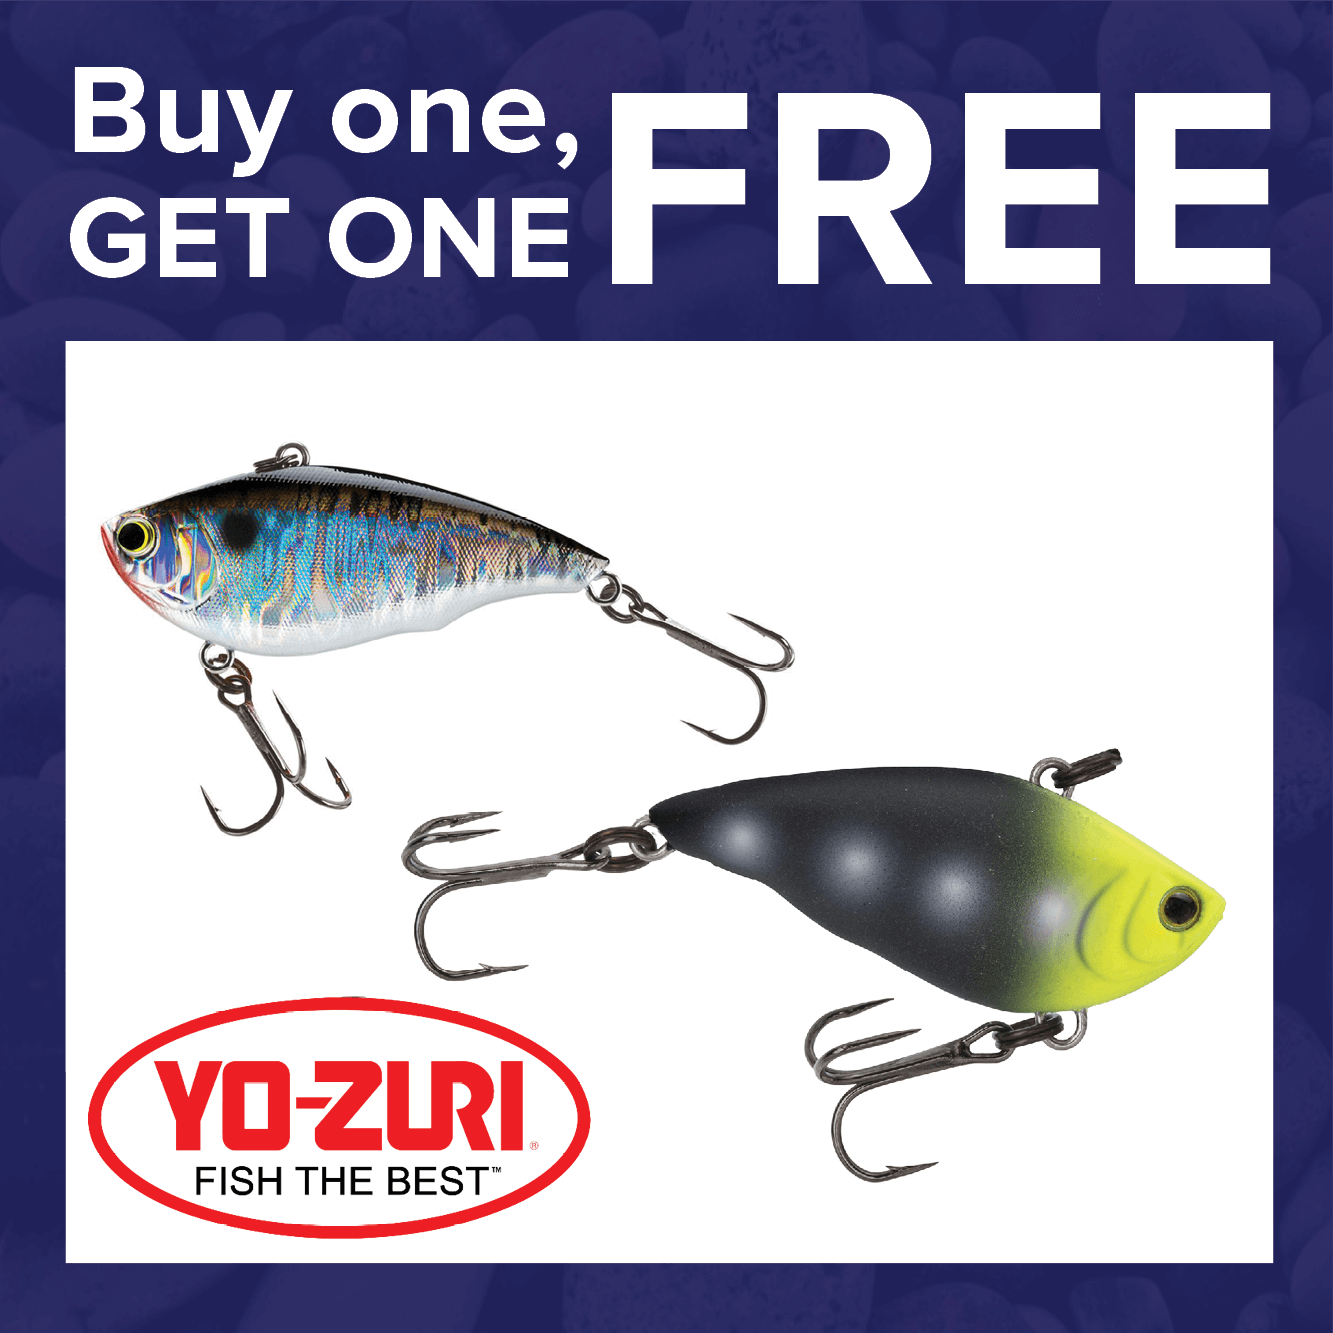 Buy 1, Get 1 FREE on Yo-Zuri Lures!